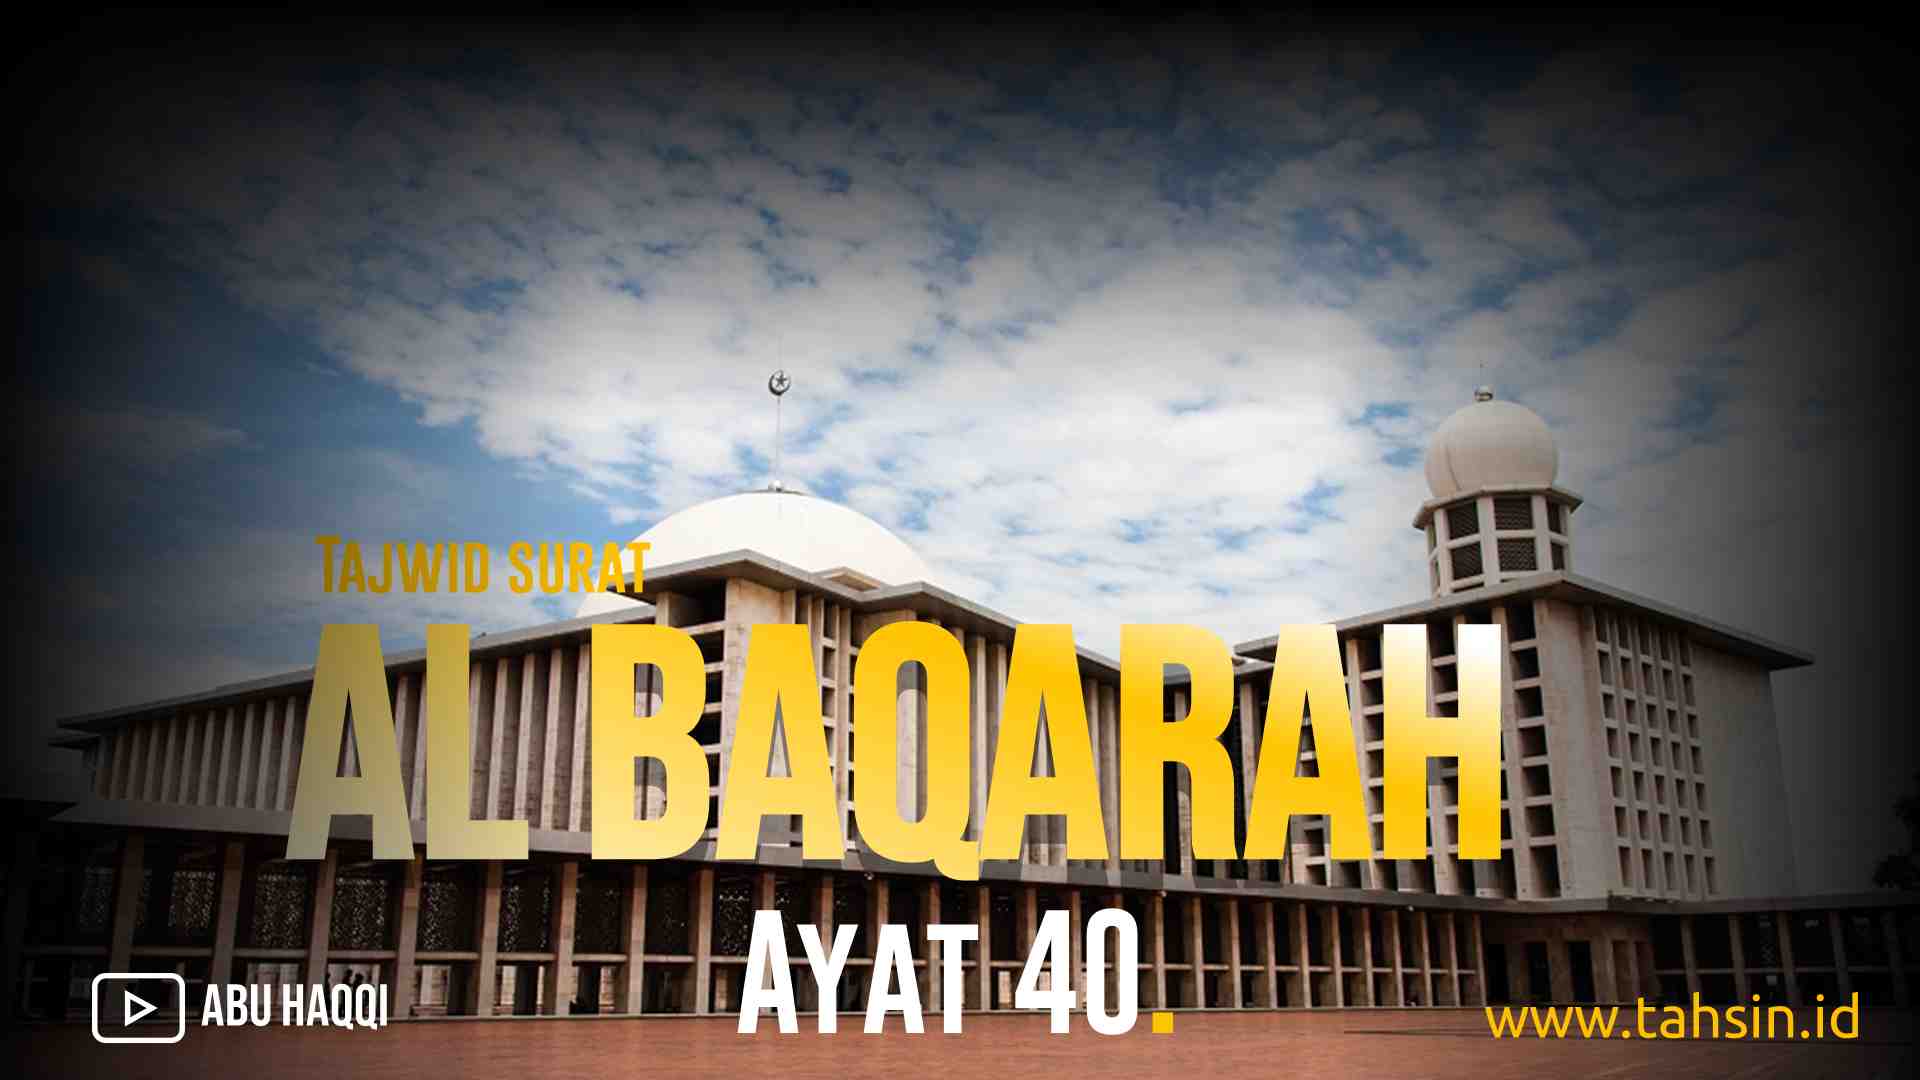 Tajwid surat Al Baqarah ayat 40